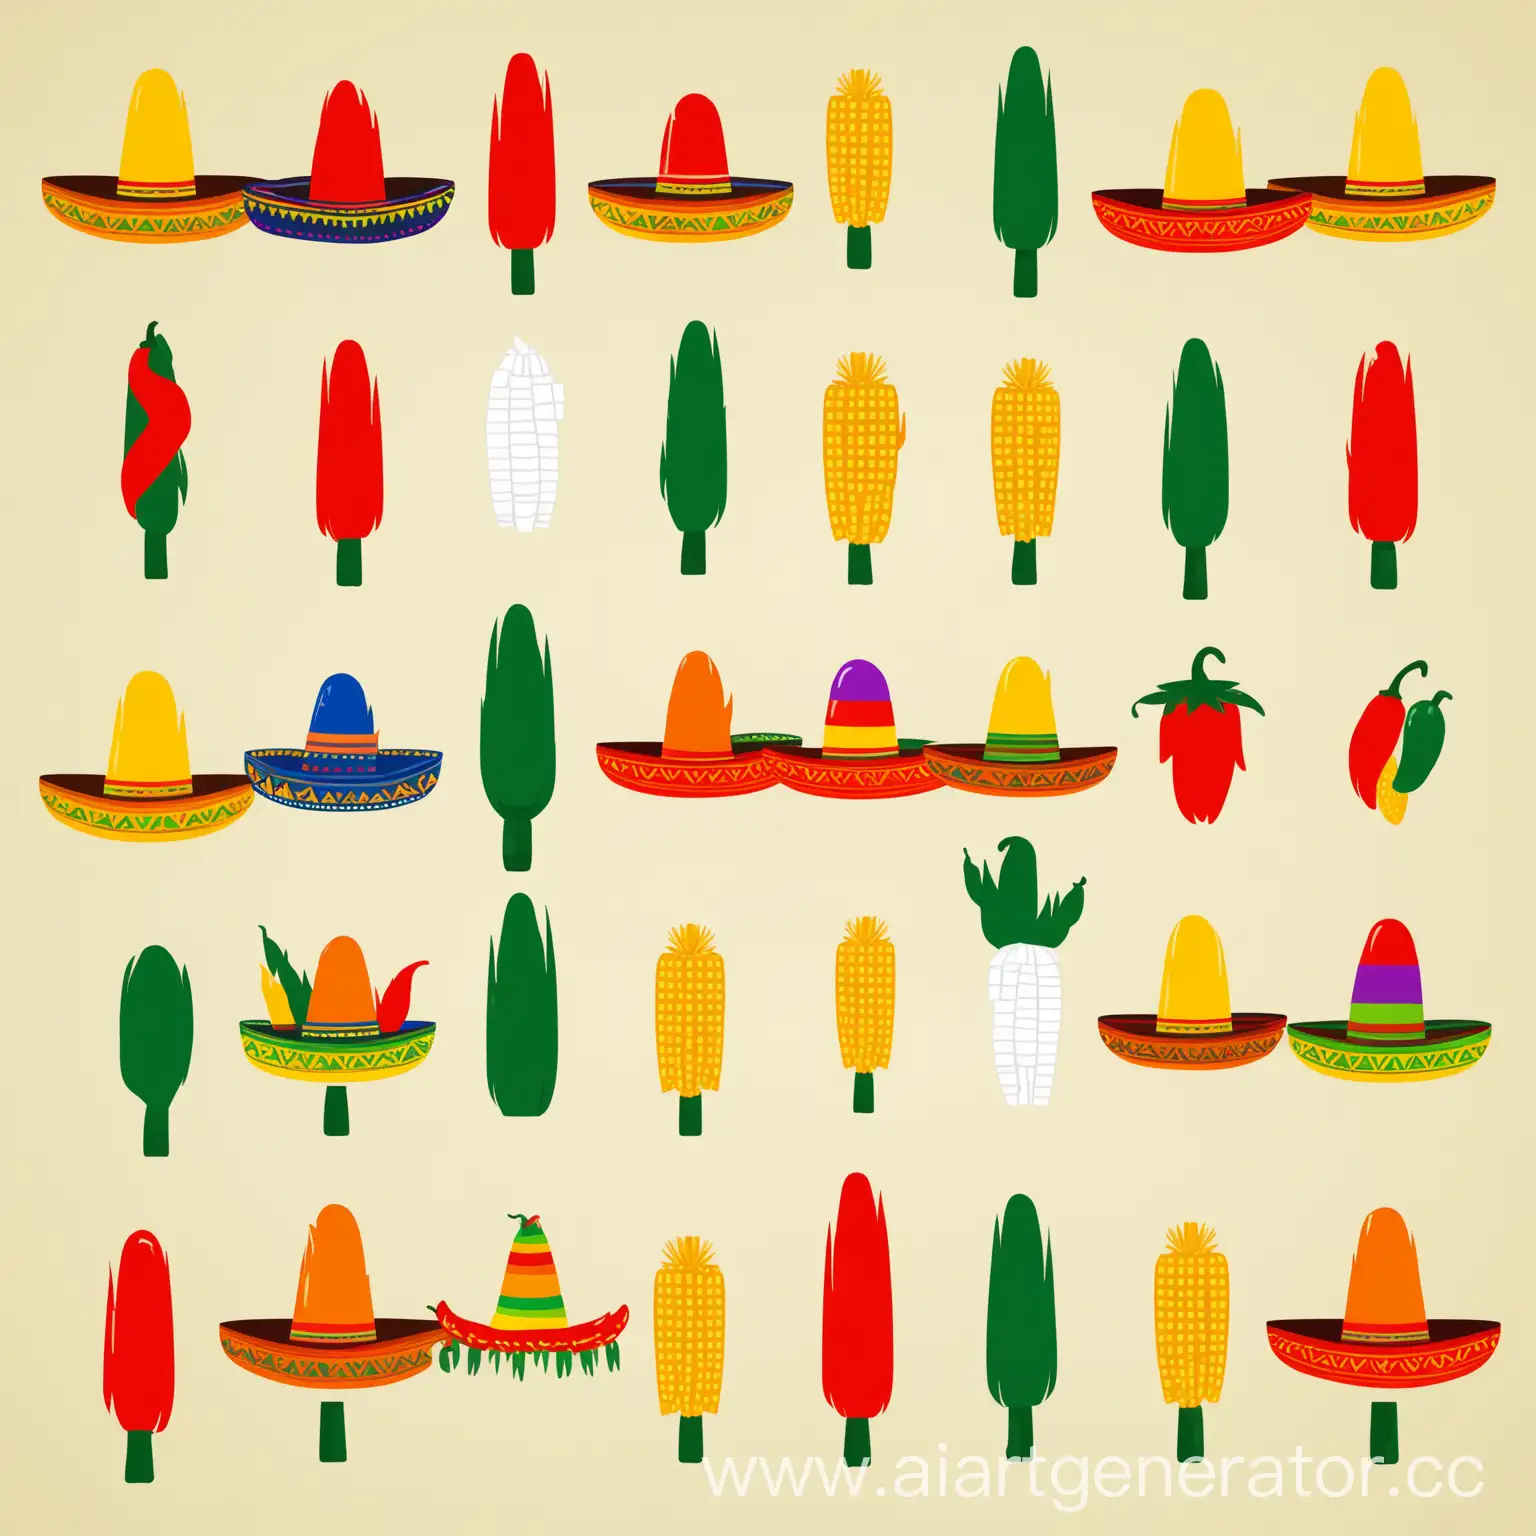 иконки, инфографика, минимализм, минимум деталей, мексиканский стиль, не больше трёх цветов, иконки в мексиканском стиле, иконки с мексикой, мексиканская шляпа, пиньята, перец халапеньо, кукуруза, перец чили